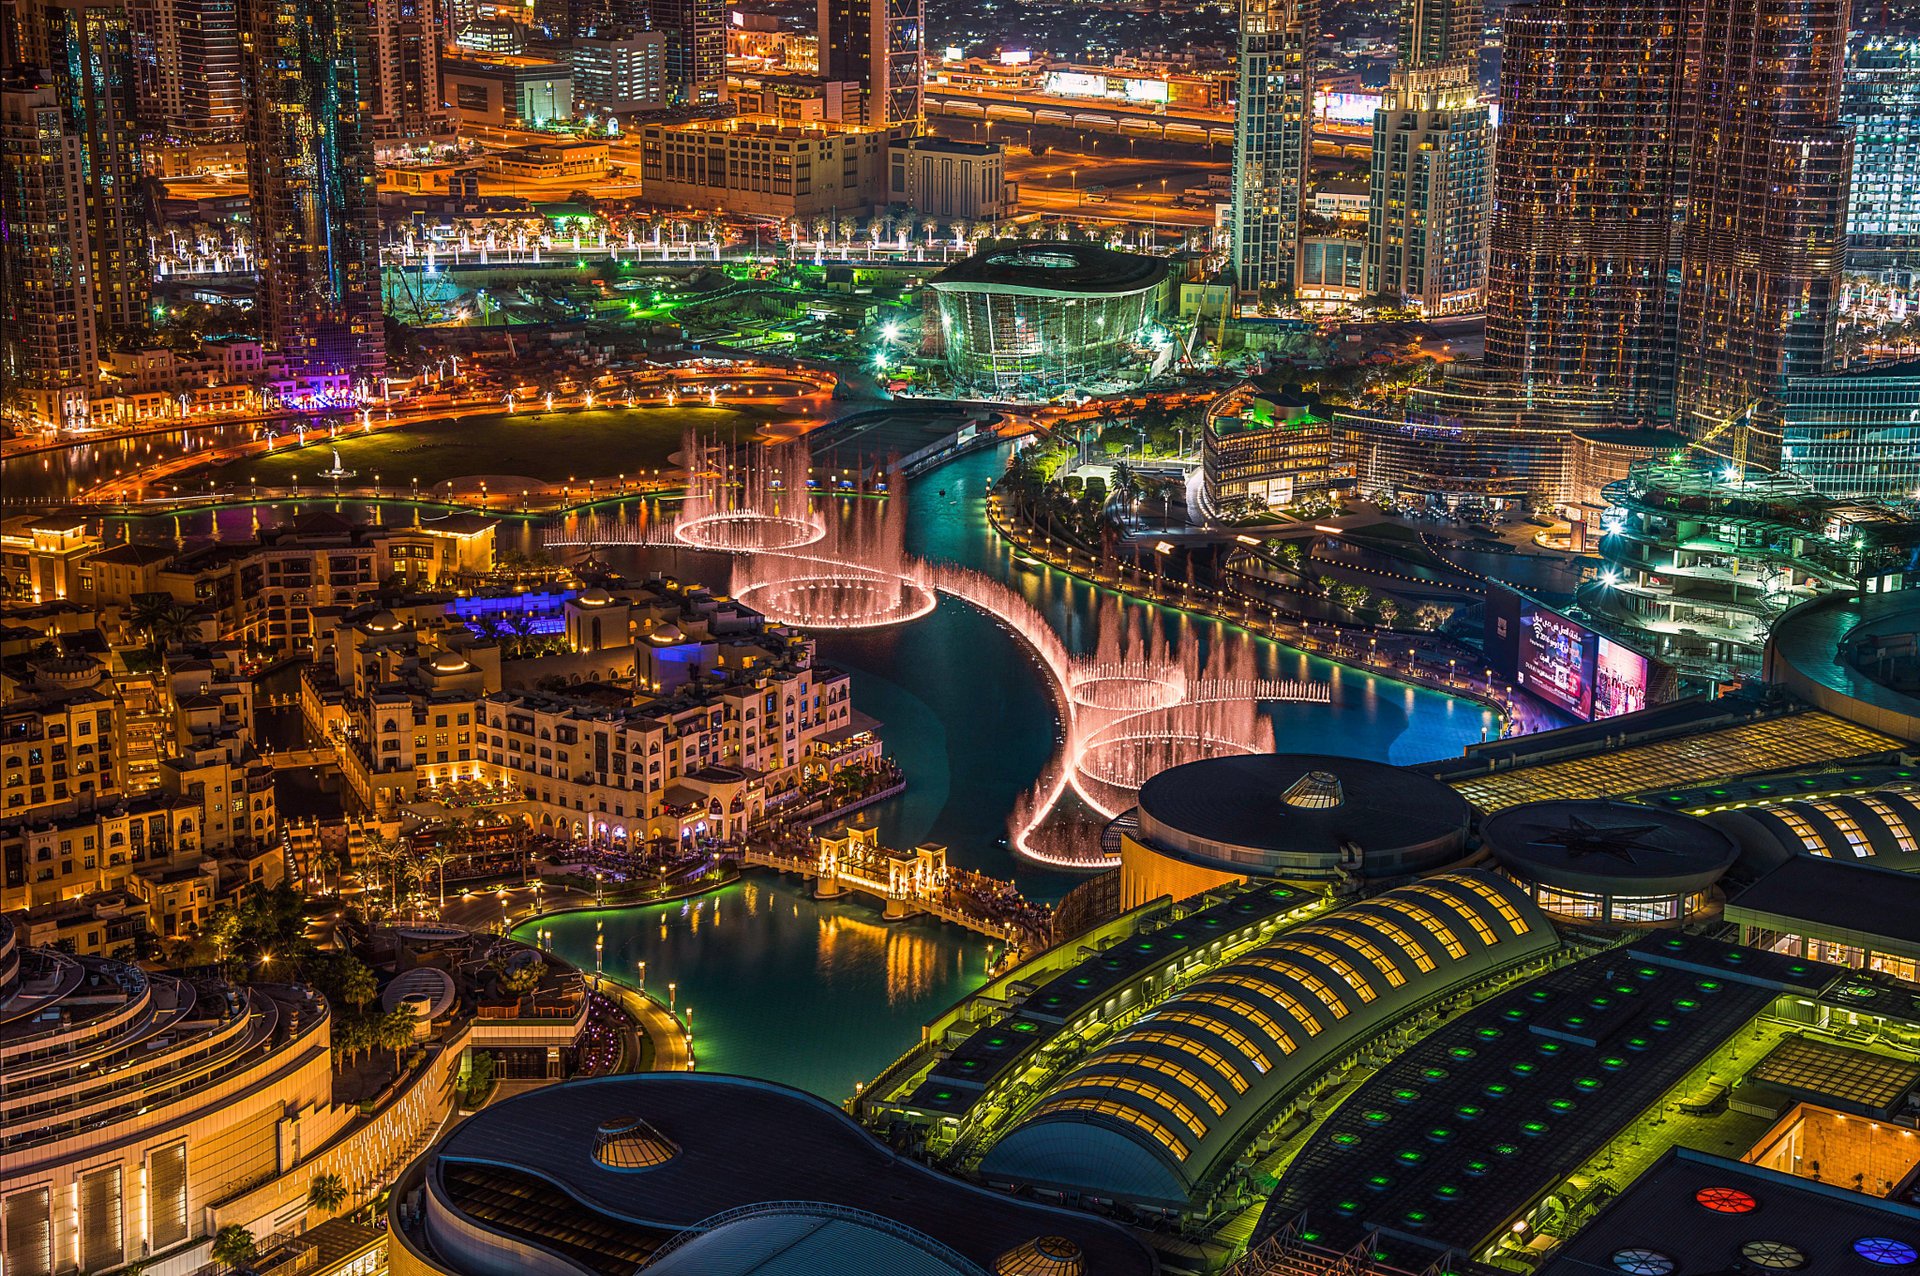 Lights in Dubai at night